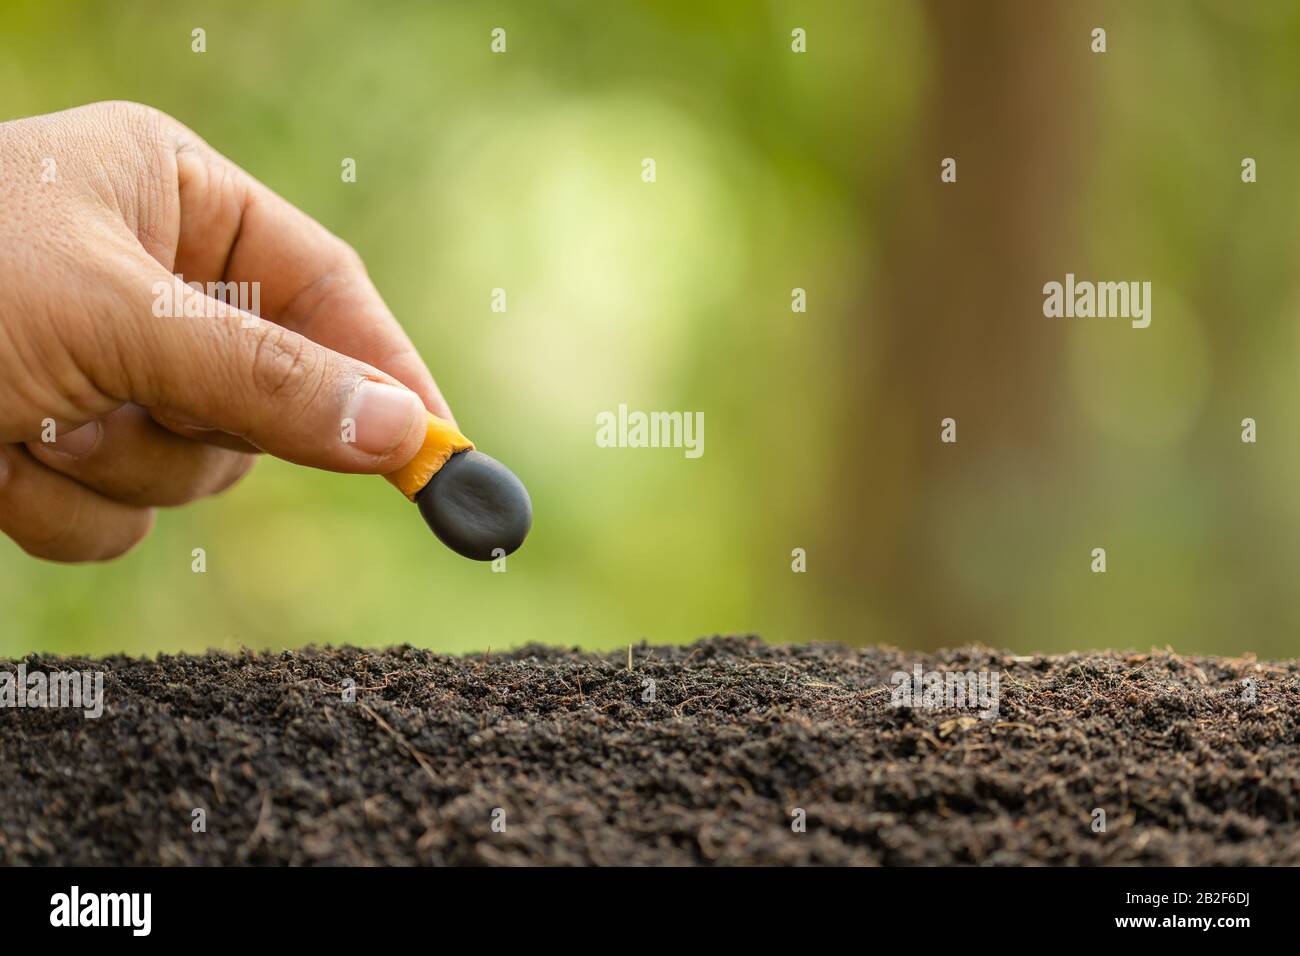 Gros plan main de l'agriculteur plantant une graine noire d'Afzelia, Doussie ou Makha mong arbre dans le sol. Concept de croissance et d'environnement Banque D'Images